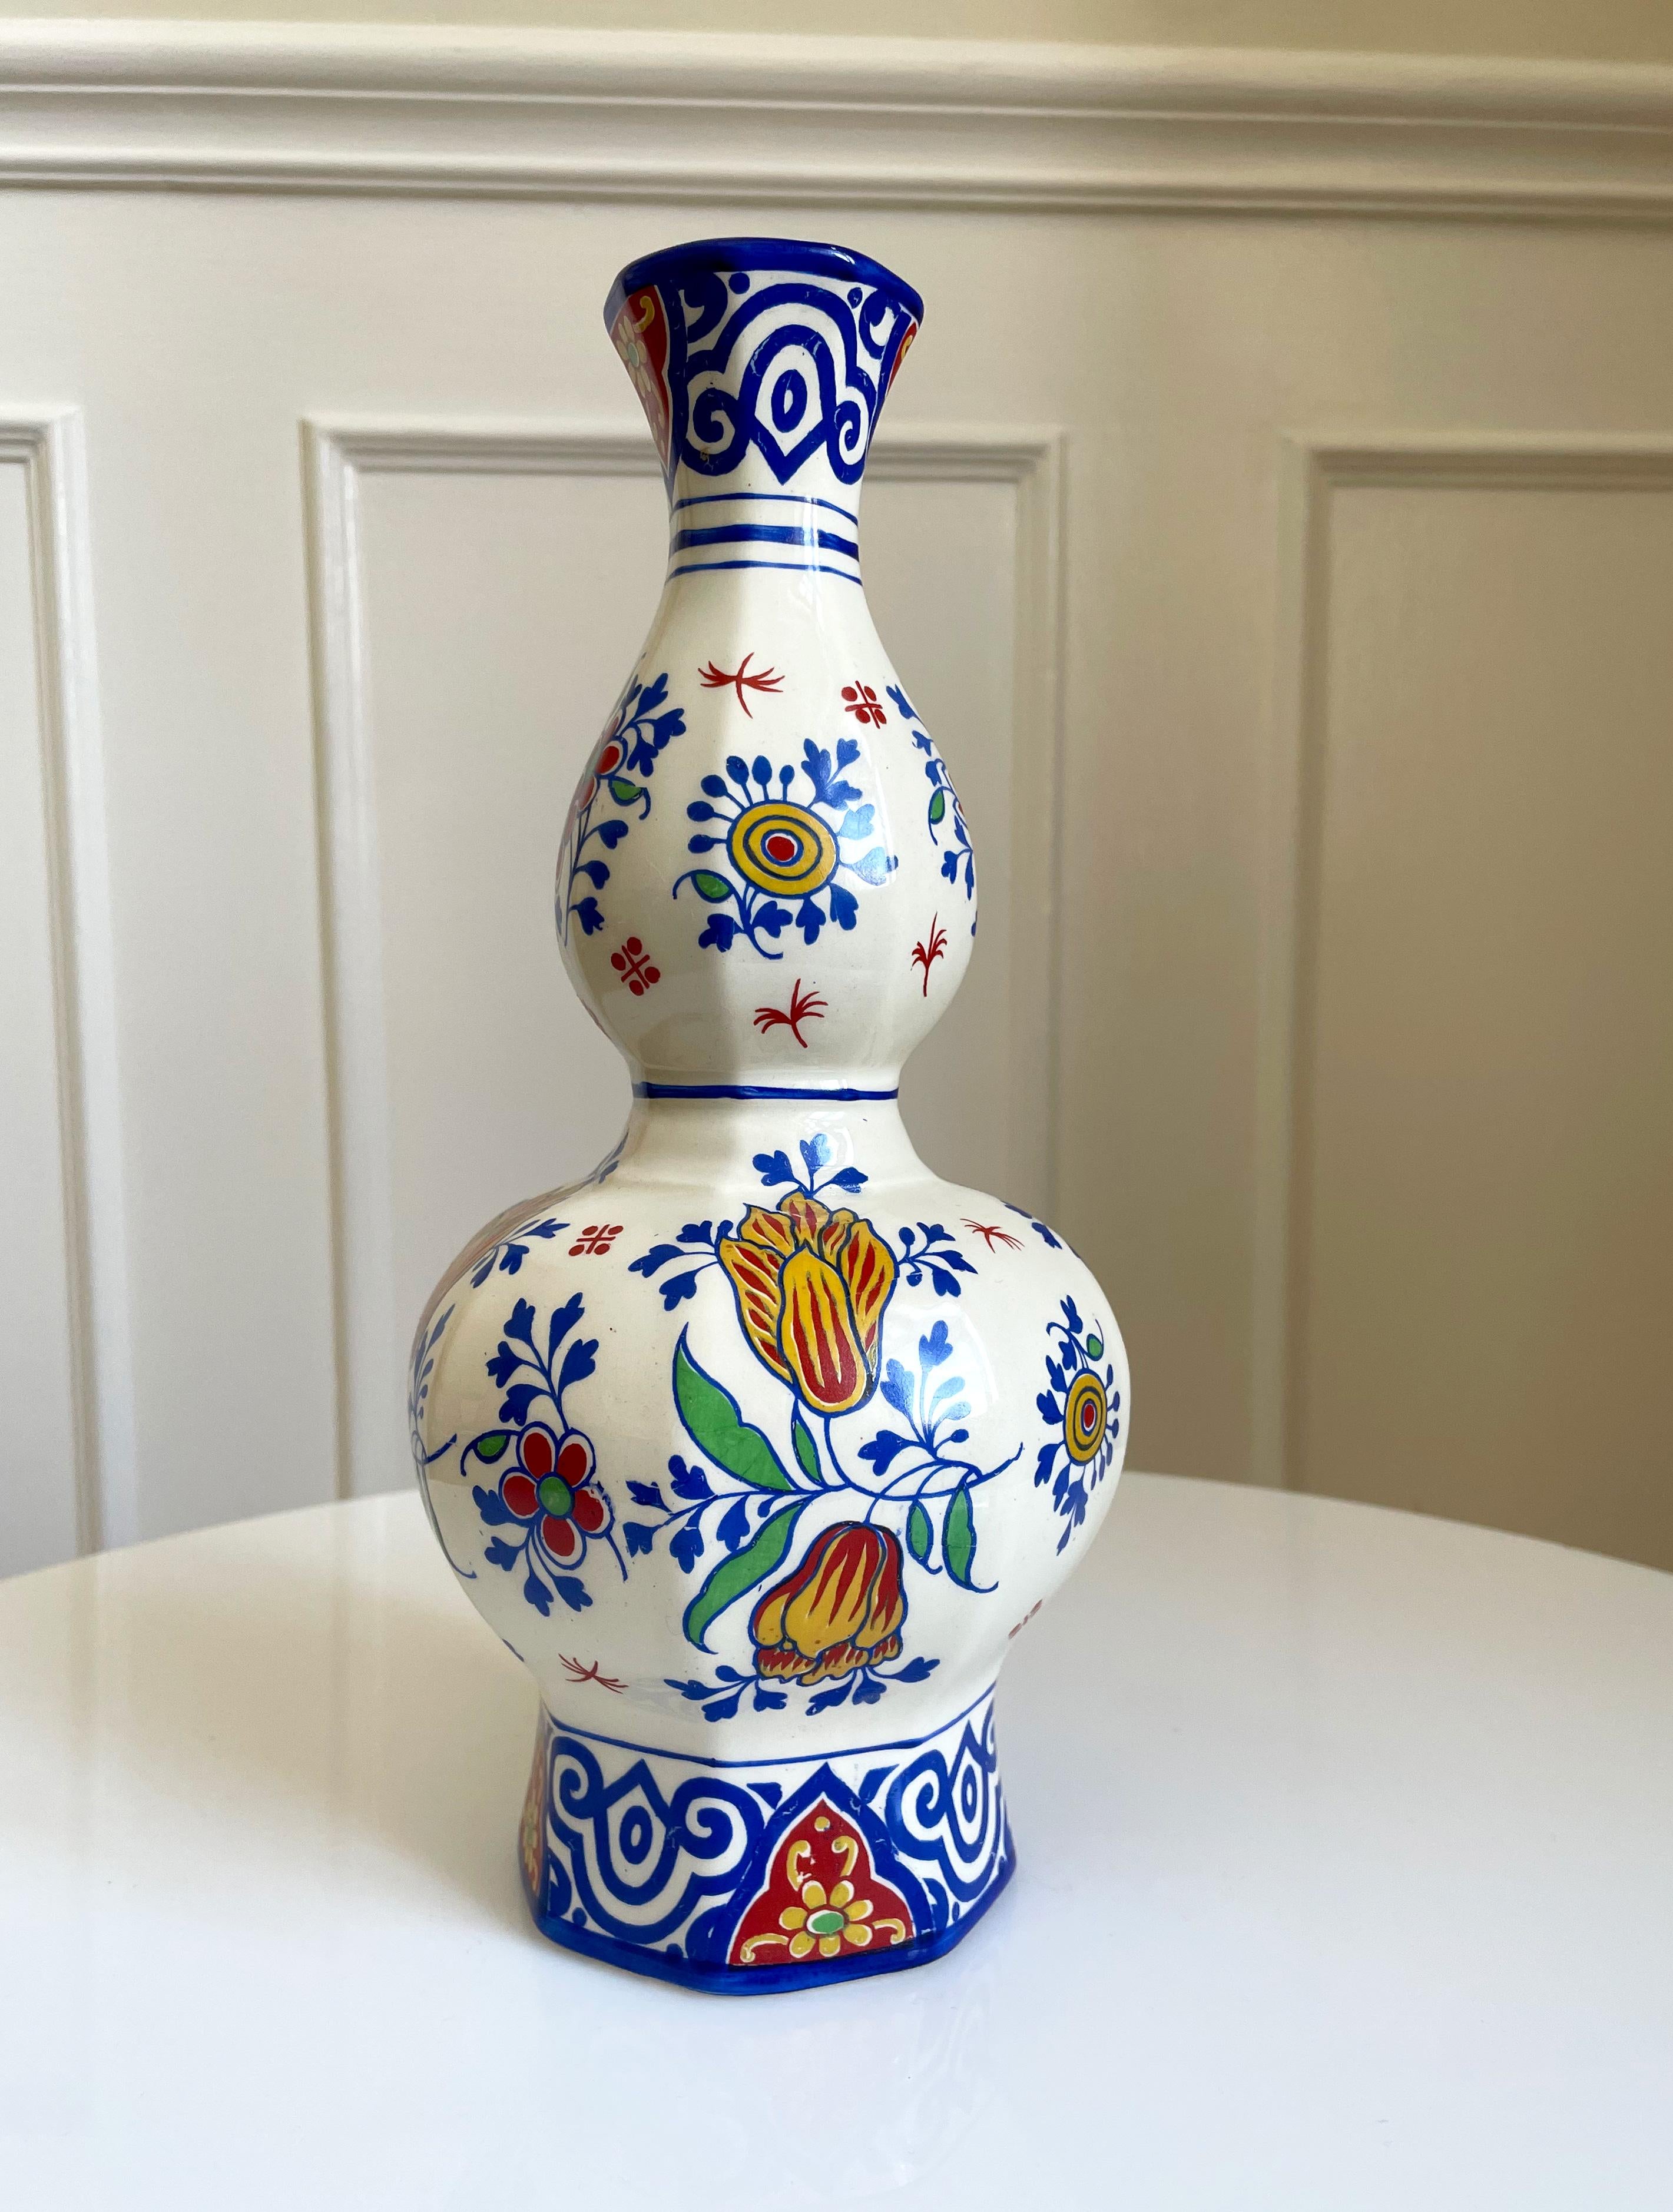 Vase coloré de 100 ans en faïence delft belge de Charles Catteau, Boch Fréres Keramis, à La Louviére, Belgique, dans les années 1920. Fleurs, feuilles et motifs organiques peints à la main en bleu, rouge, jaune et vert éclatants sur fond blanc